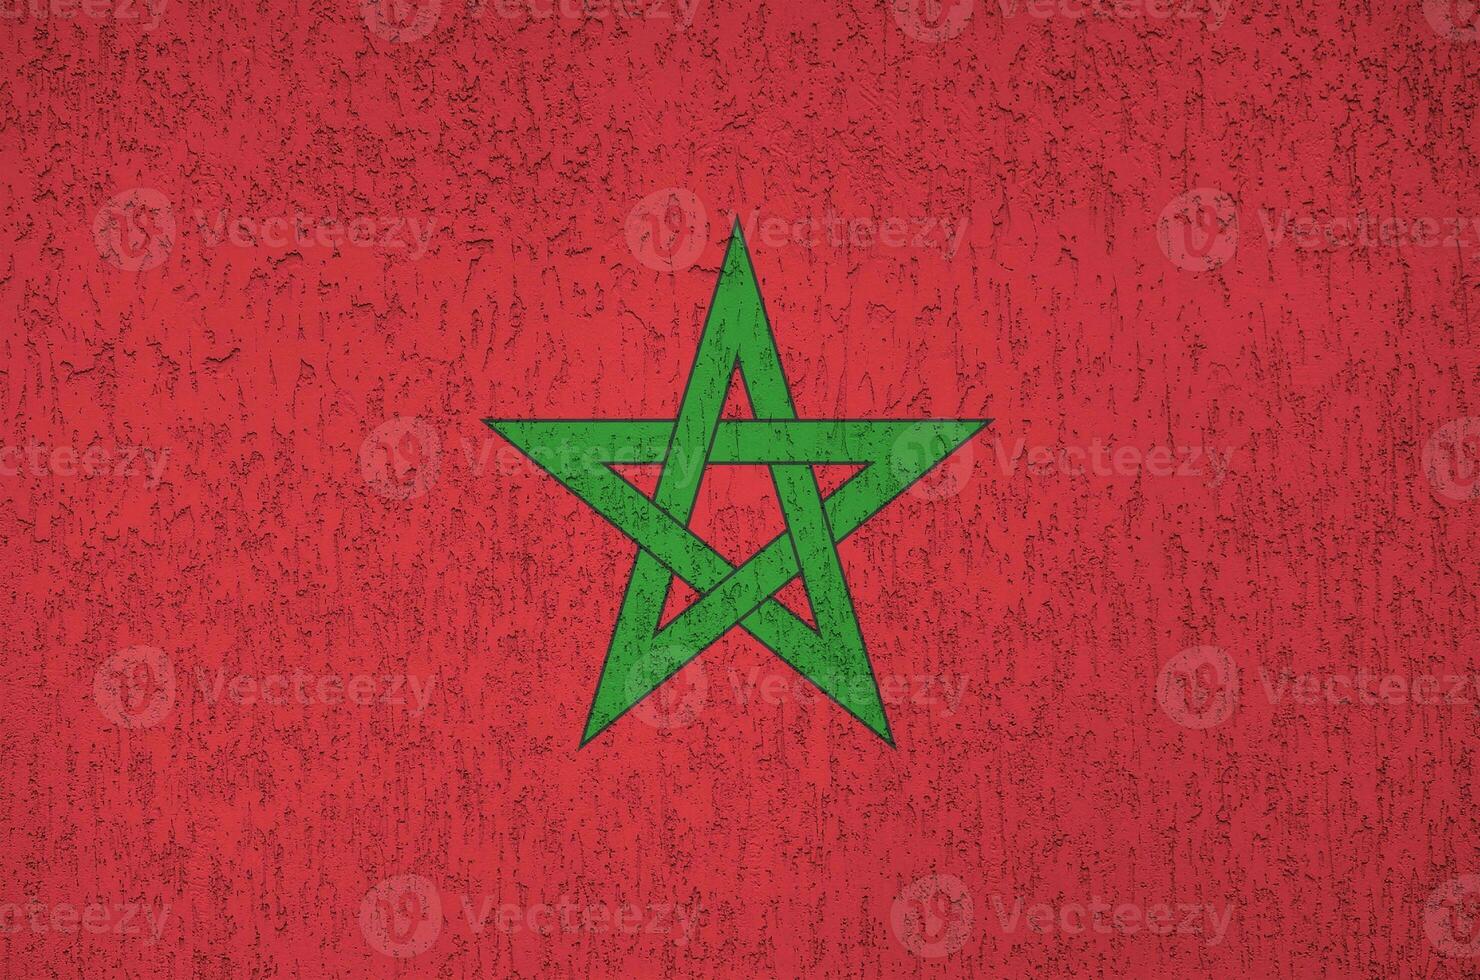 marocko flagga avbildad i ljus måla färger på gammal lättnad putsning vägg. texturerad baner på grov bakgrund foto